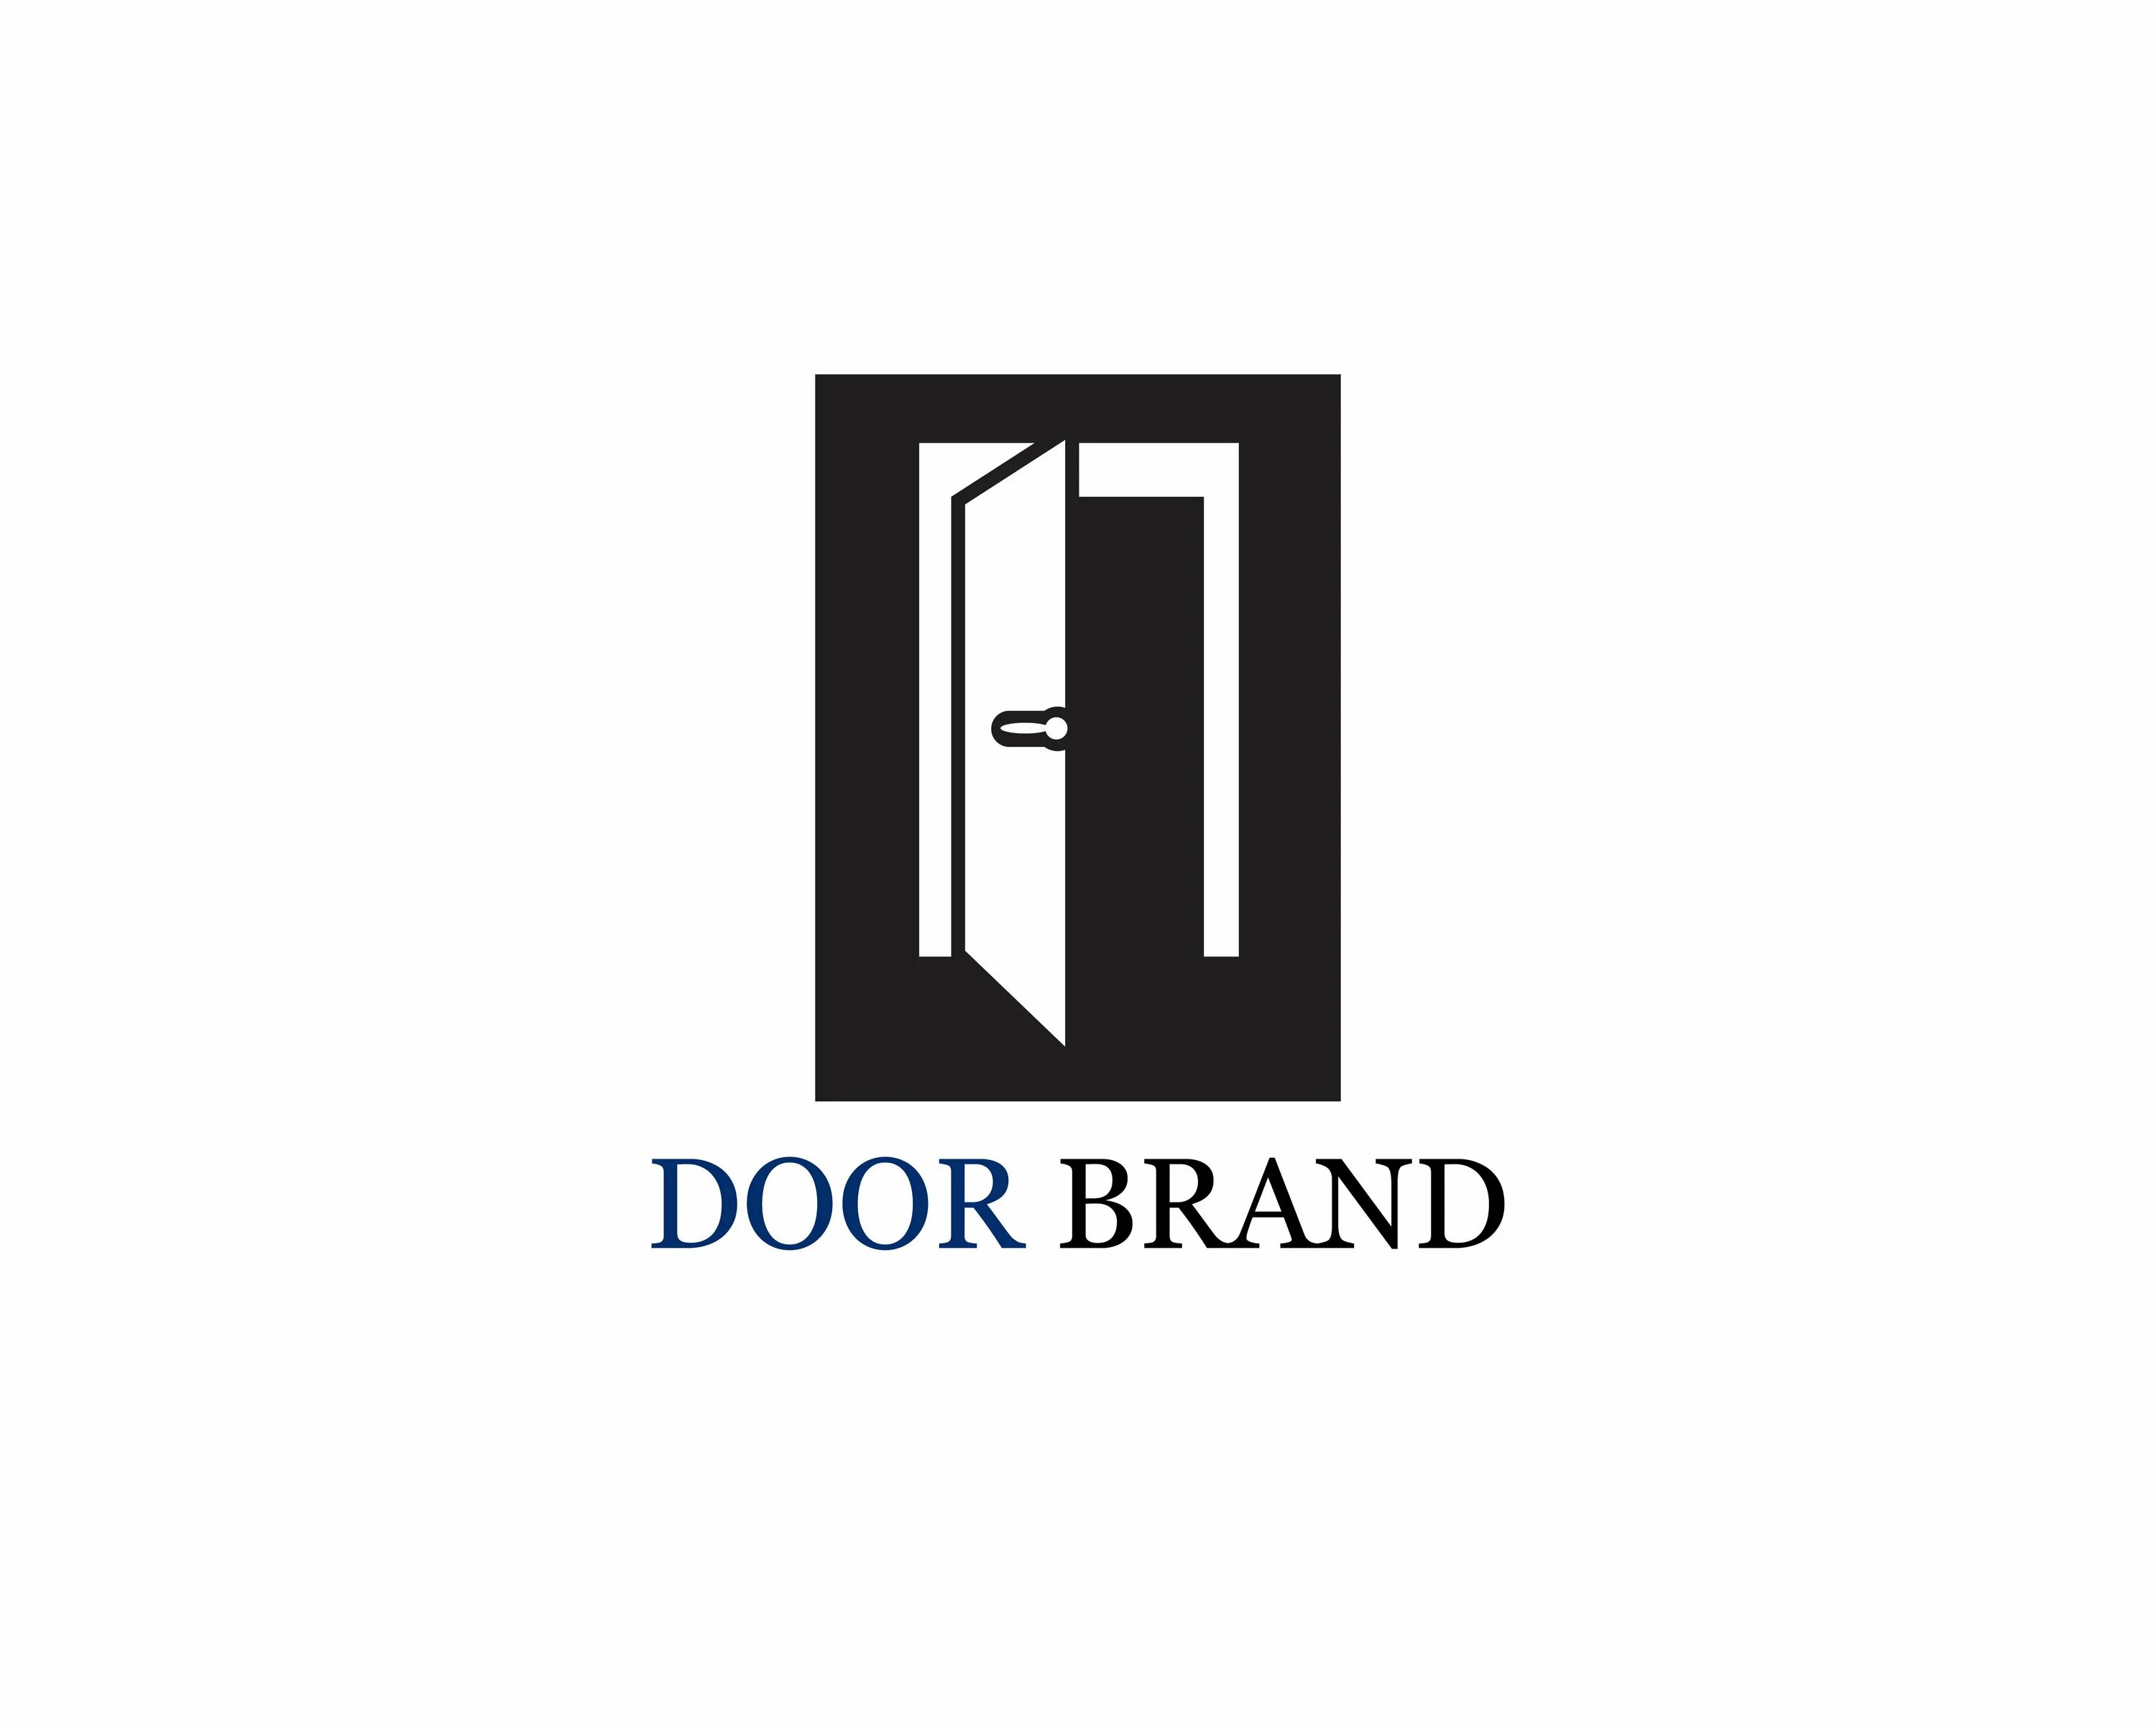 Двери лого. Логотип двери. Стильные двери логотип. Двери лого вектор. МДФ двери лого.